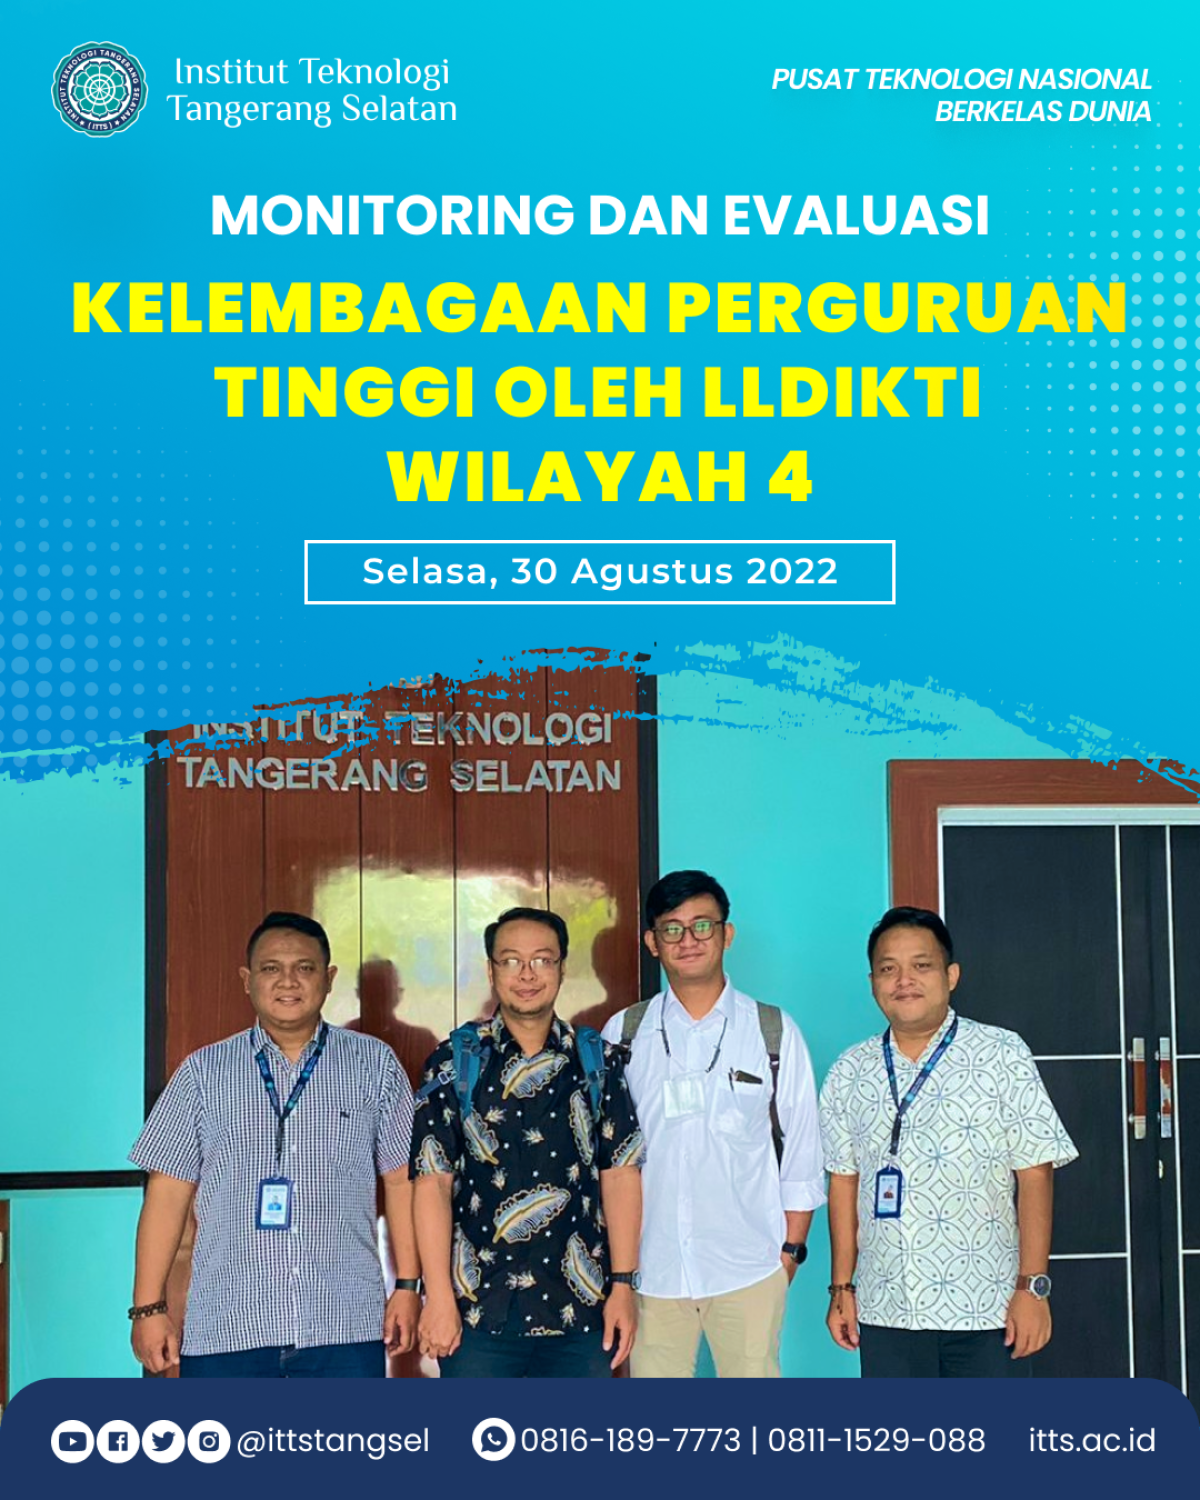 Monitoring dan Evaluasi LLDIKTI Wilayah 4 ke Institut Teknologi Tangerang Selatan